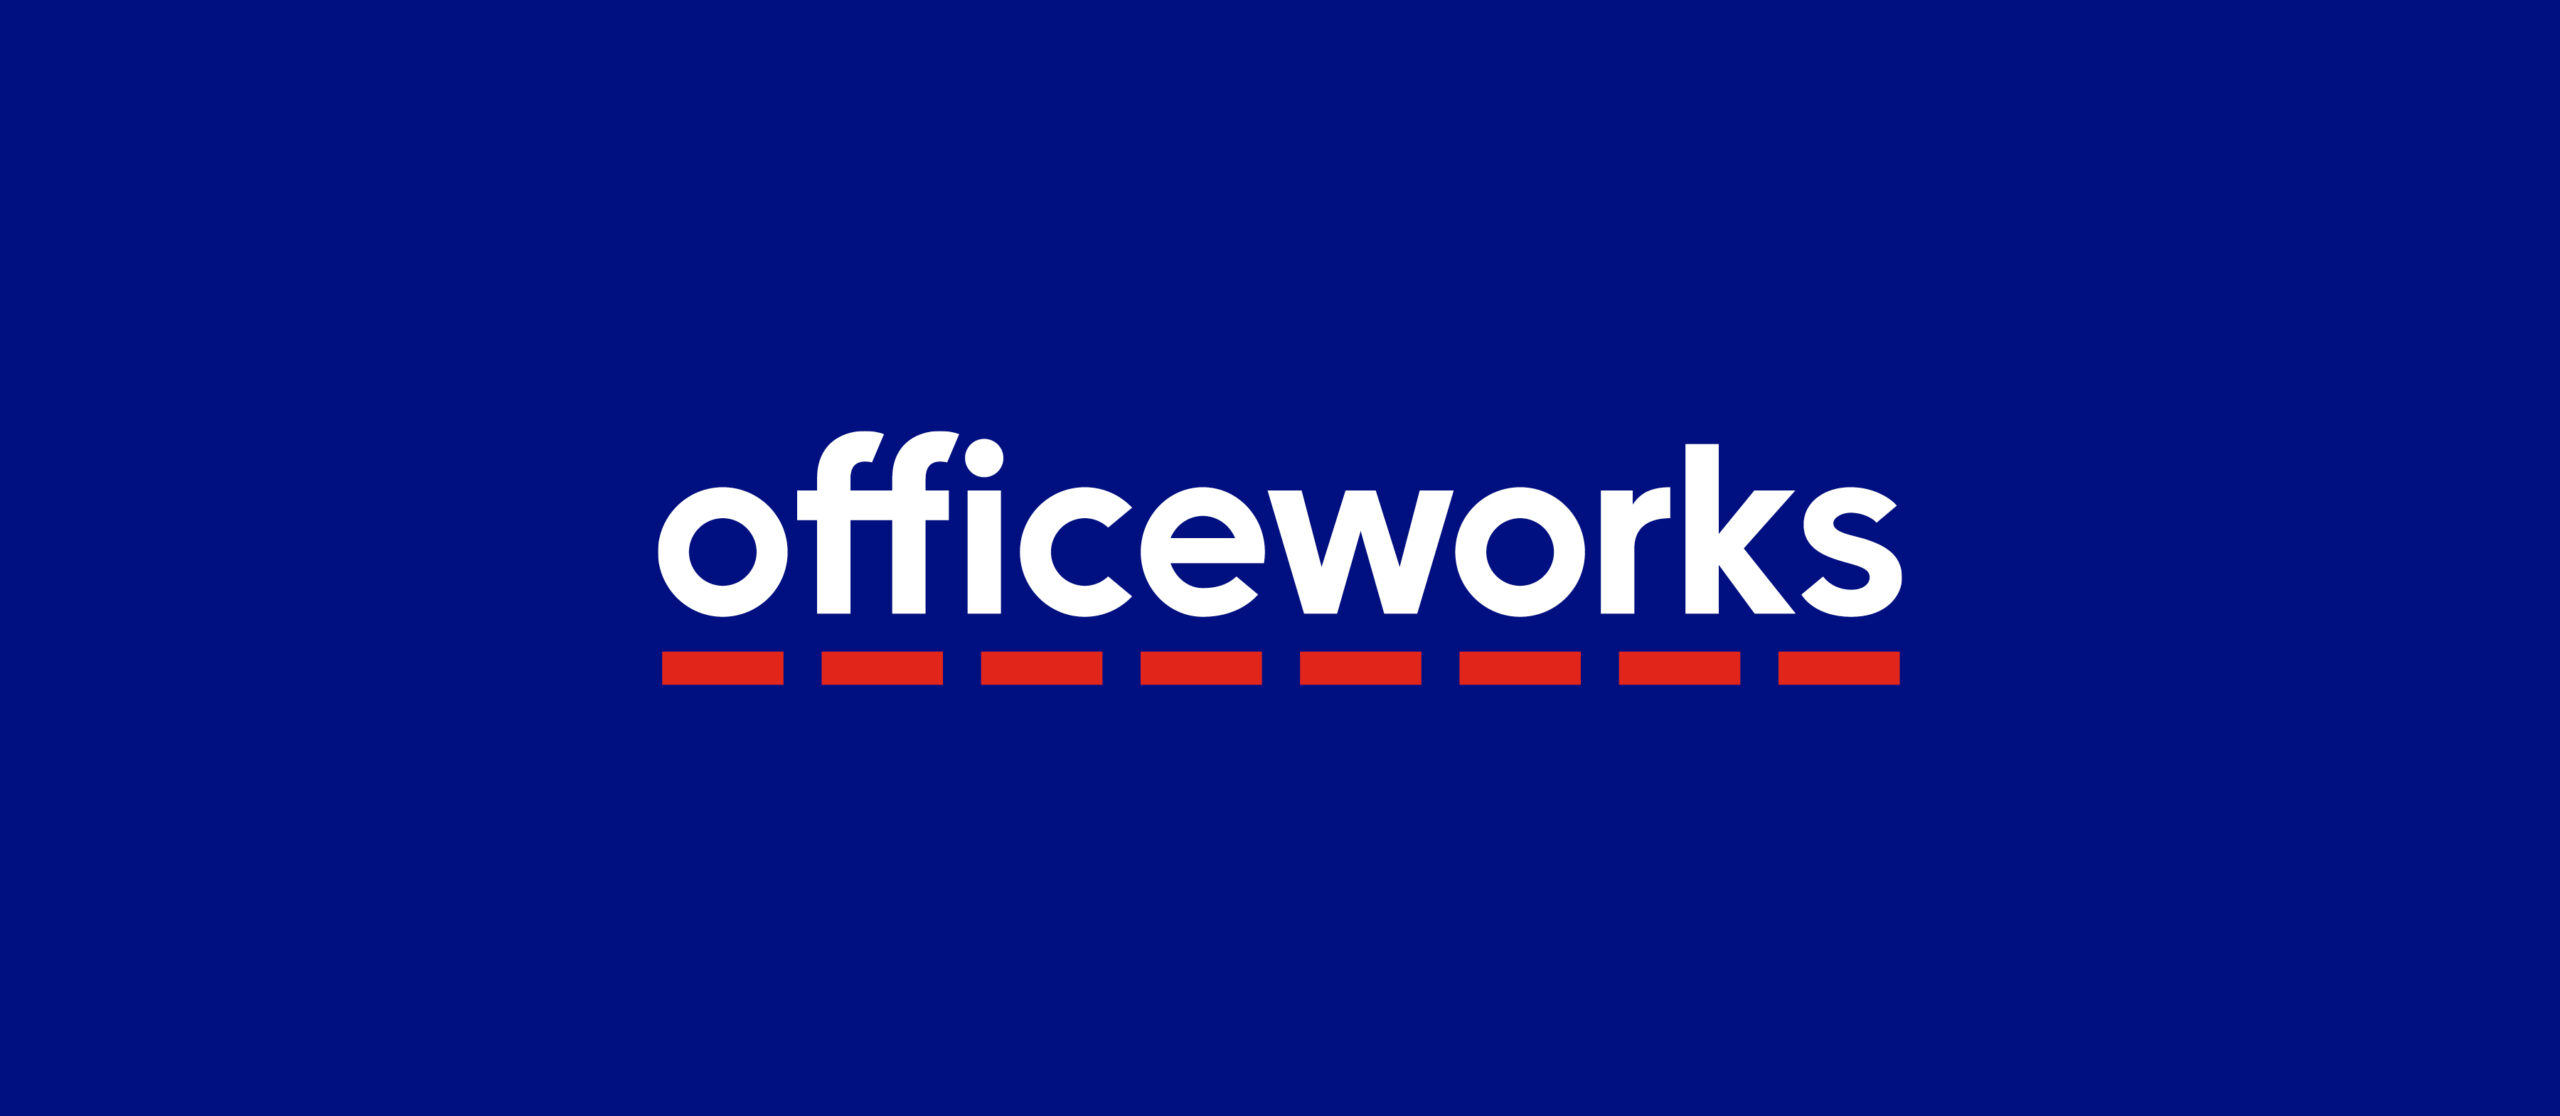 officeworks_logo